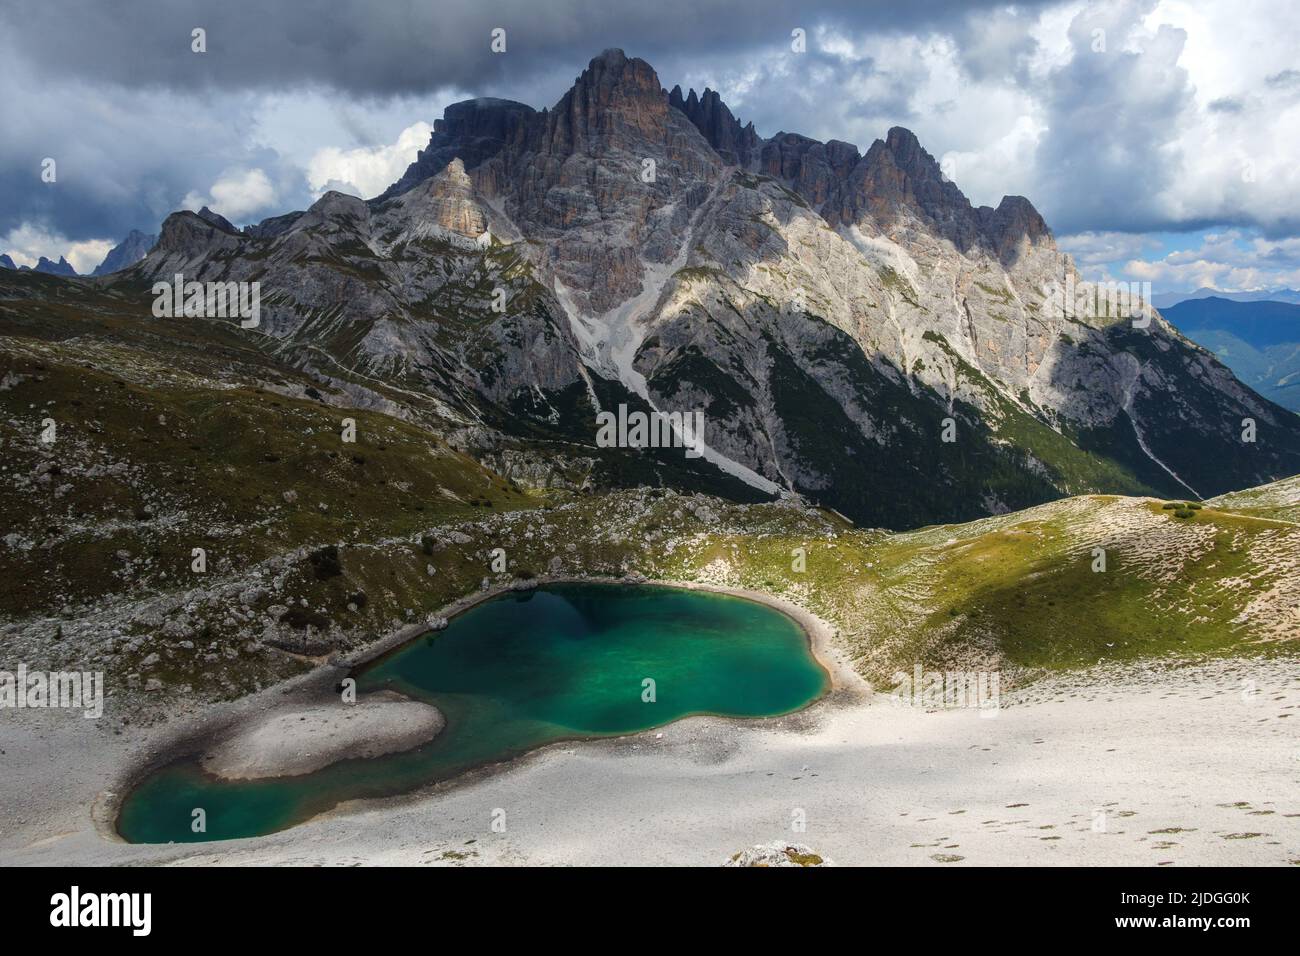 Meseta de Piani (Alpe dei Piani). Lago alpino. Punta dei Tre Cestas de montaña Scarperi. Los Dolomitas Sexten. Alpes italianos. Europa. Foto de stock